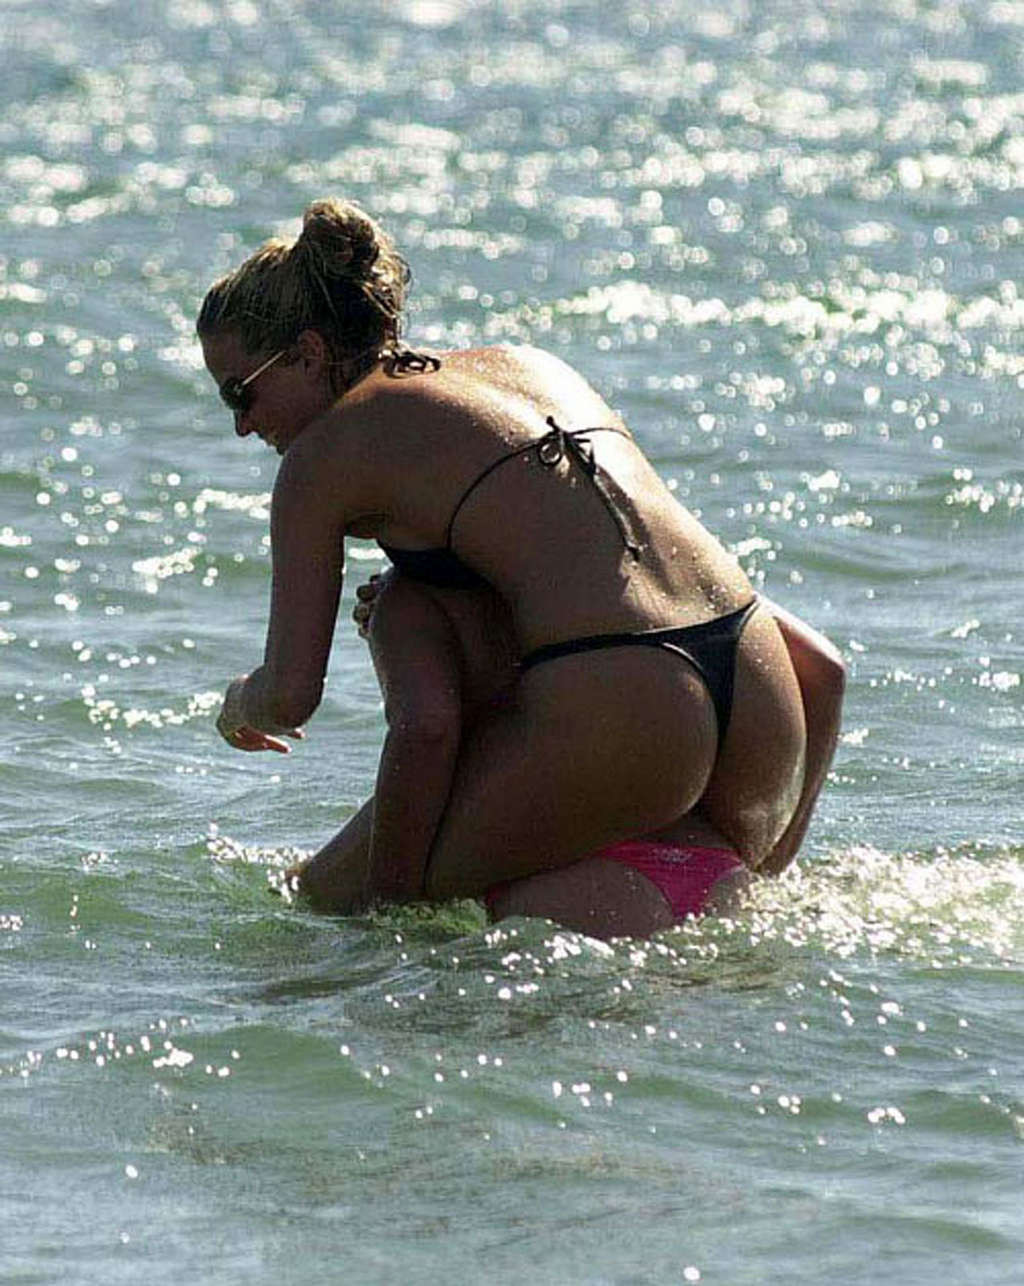 Sarah harding mostrando su culo en tanga en la playa y con falda arriba #75375356